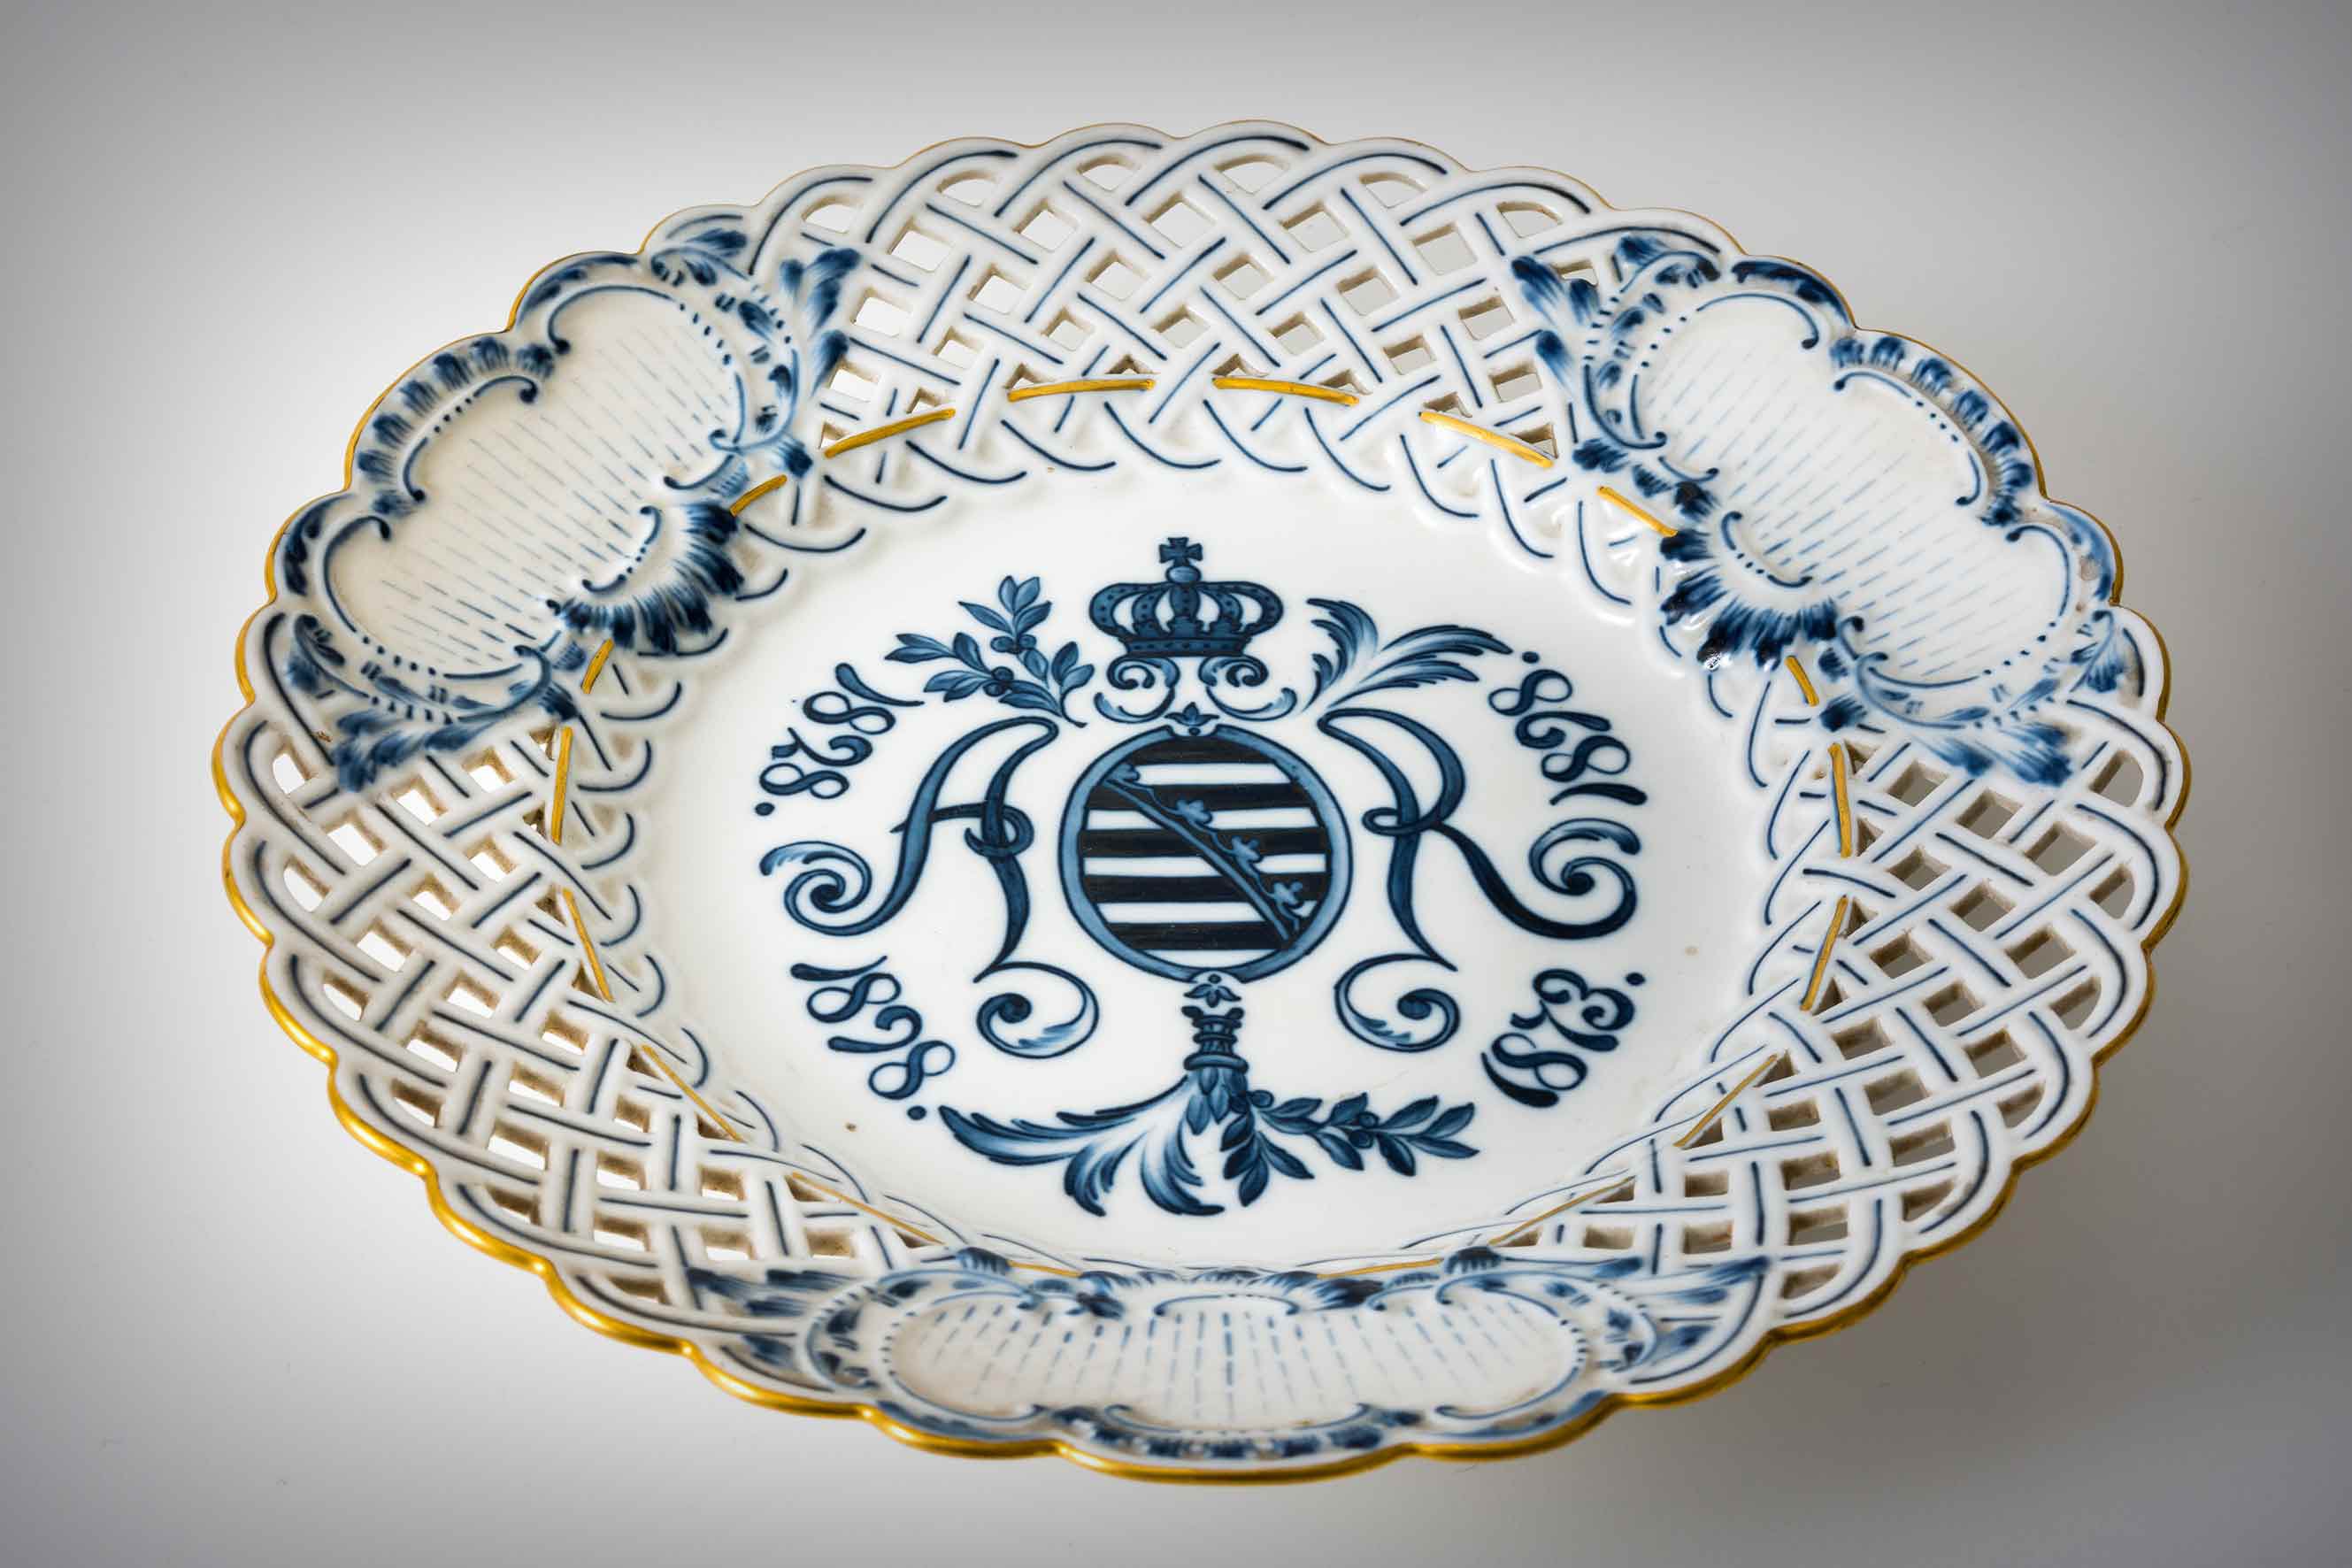 Zakladatele míšeňské manufaktury připomíná pamětní talíř z roku 1898. Písmena AR, Augustus Rex, která lemují saský znak završený vévodskou korunou, byla první značkou porcelánky.